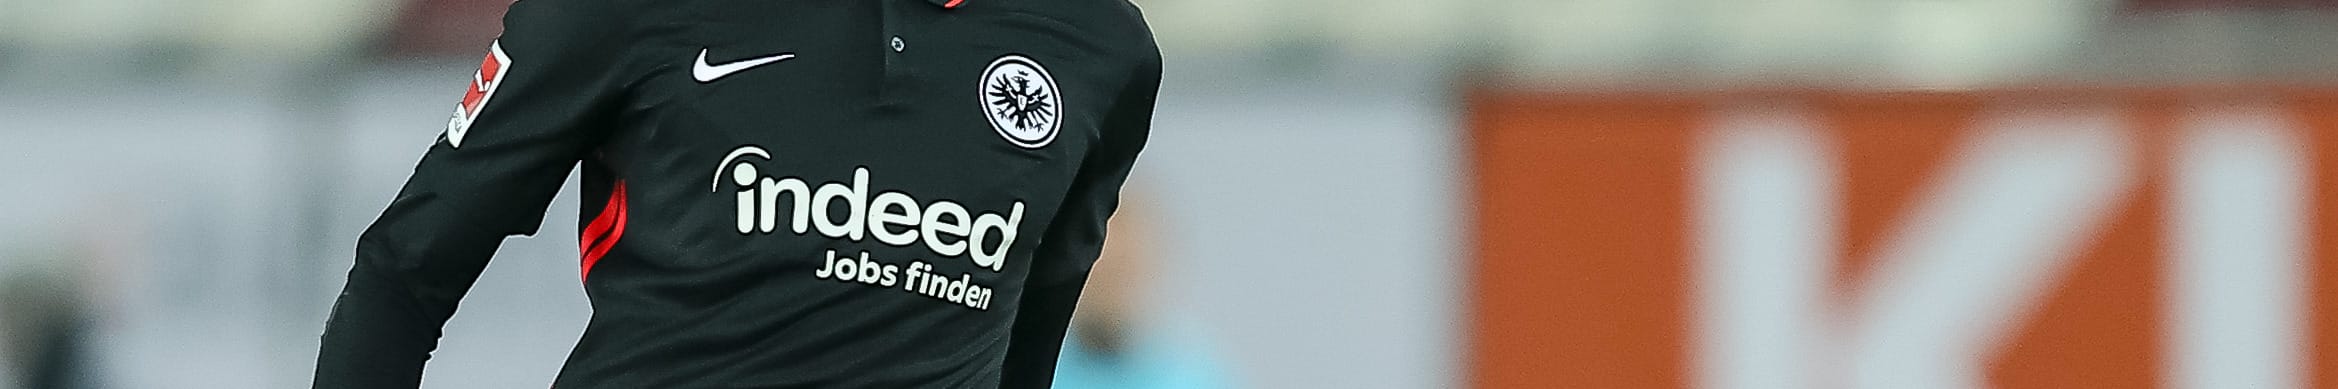 Eintracht Frankfurt: Der Konkurrenz einen Schritt voraus